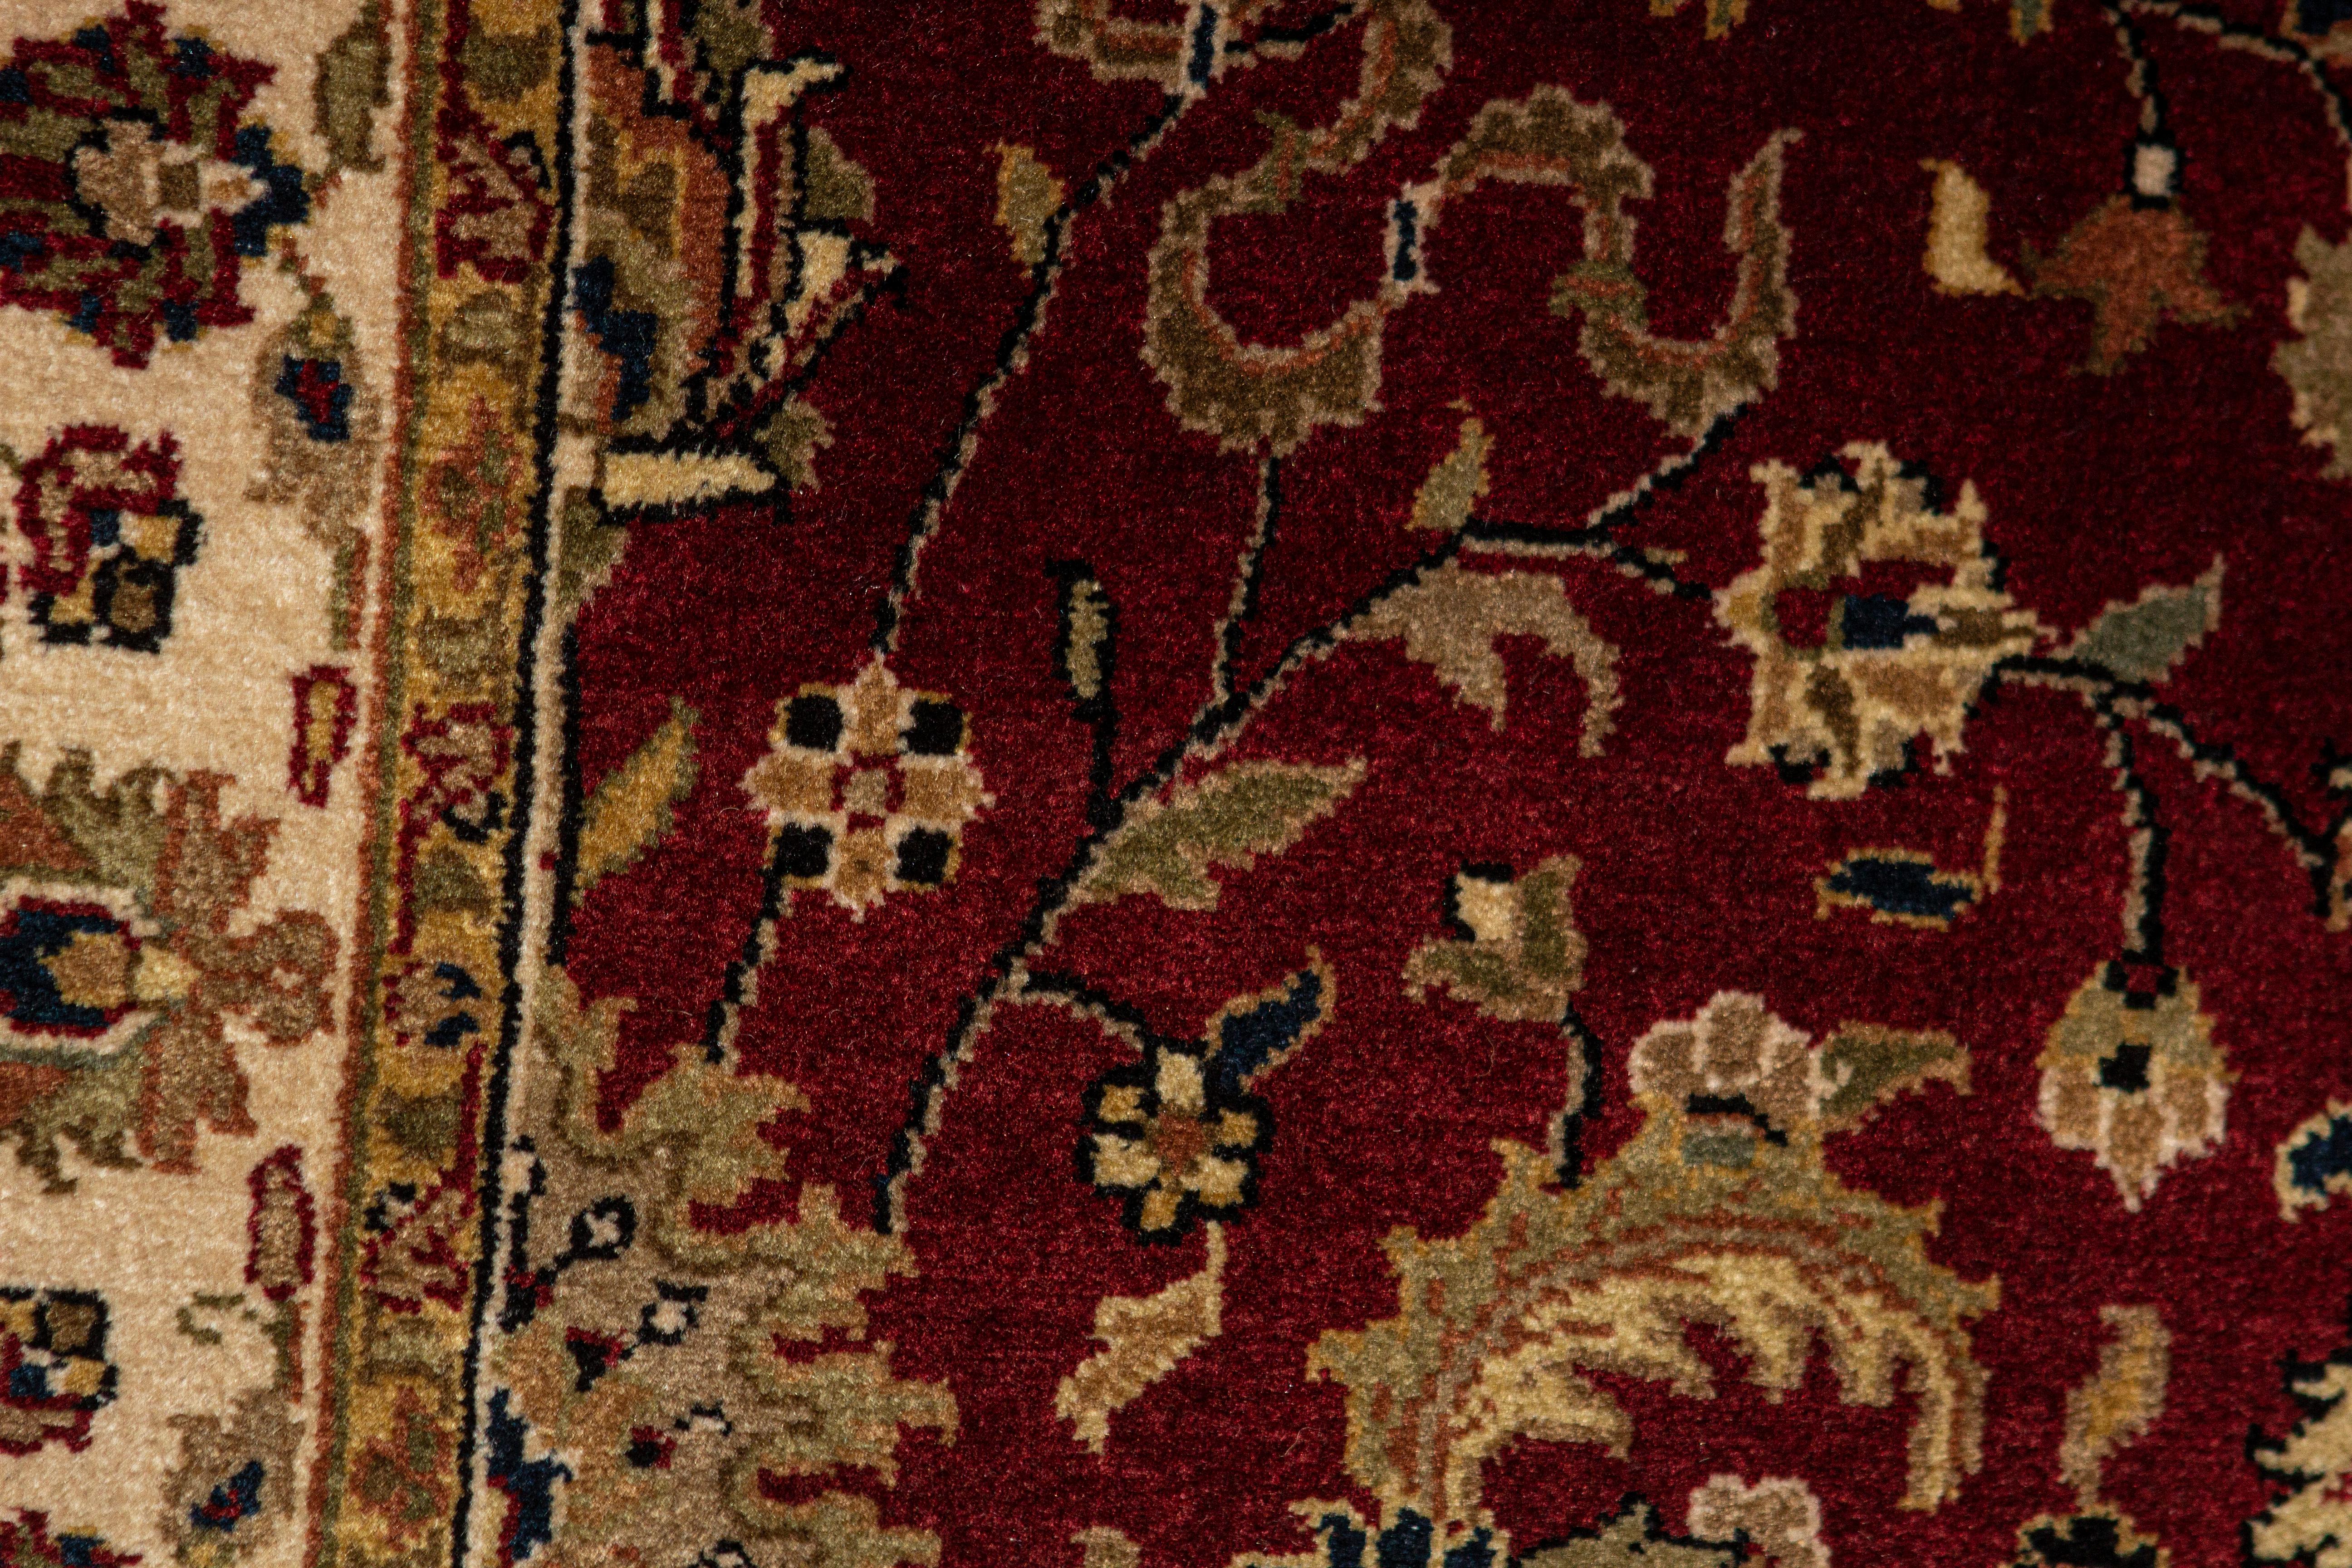 Antike Teppiche, die in Indien gewebt wurden, können auf eine lange Geschichte zurückblicken und gehören zu den faszinierendsten aller orientalischen Teppiche. Inspiriert von traditionellen Designs wurden der Stil und die Muster dieses handgewebten